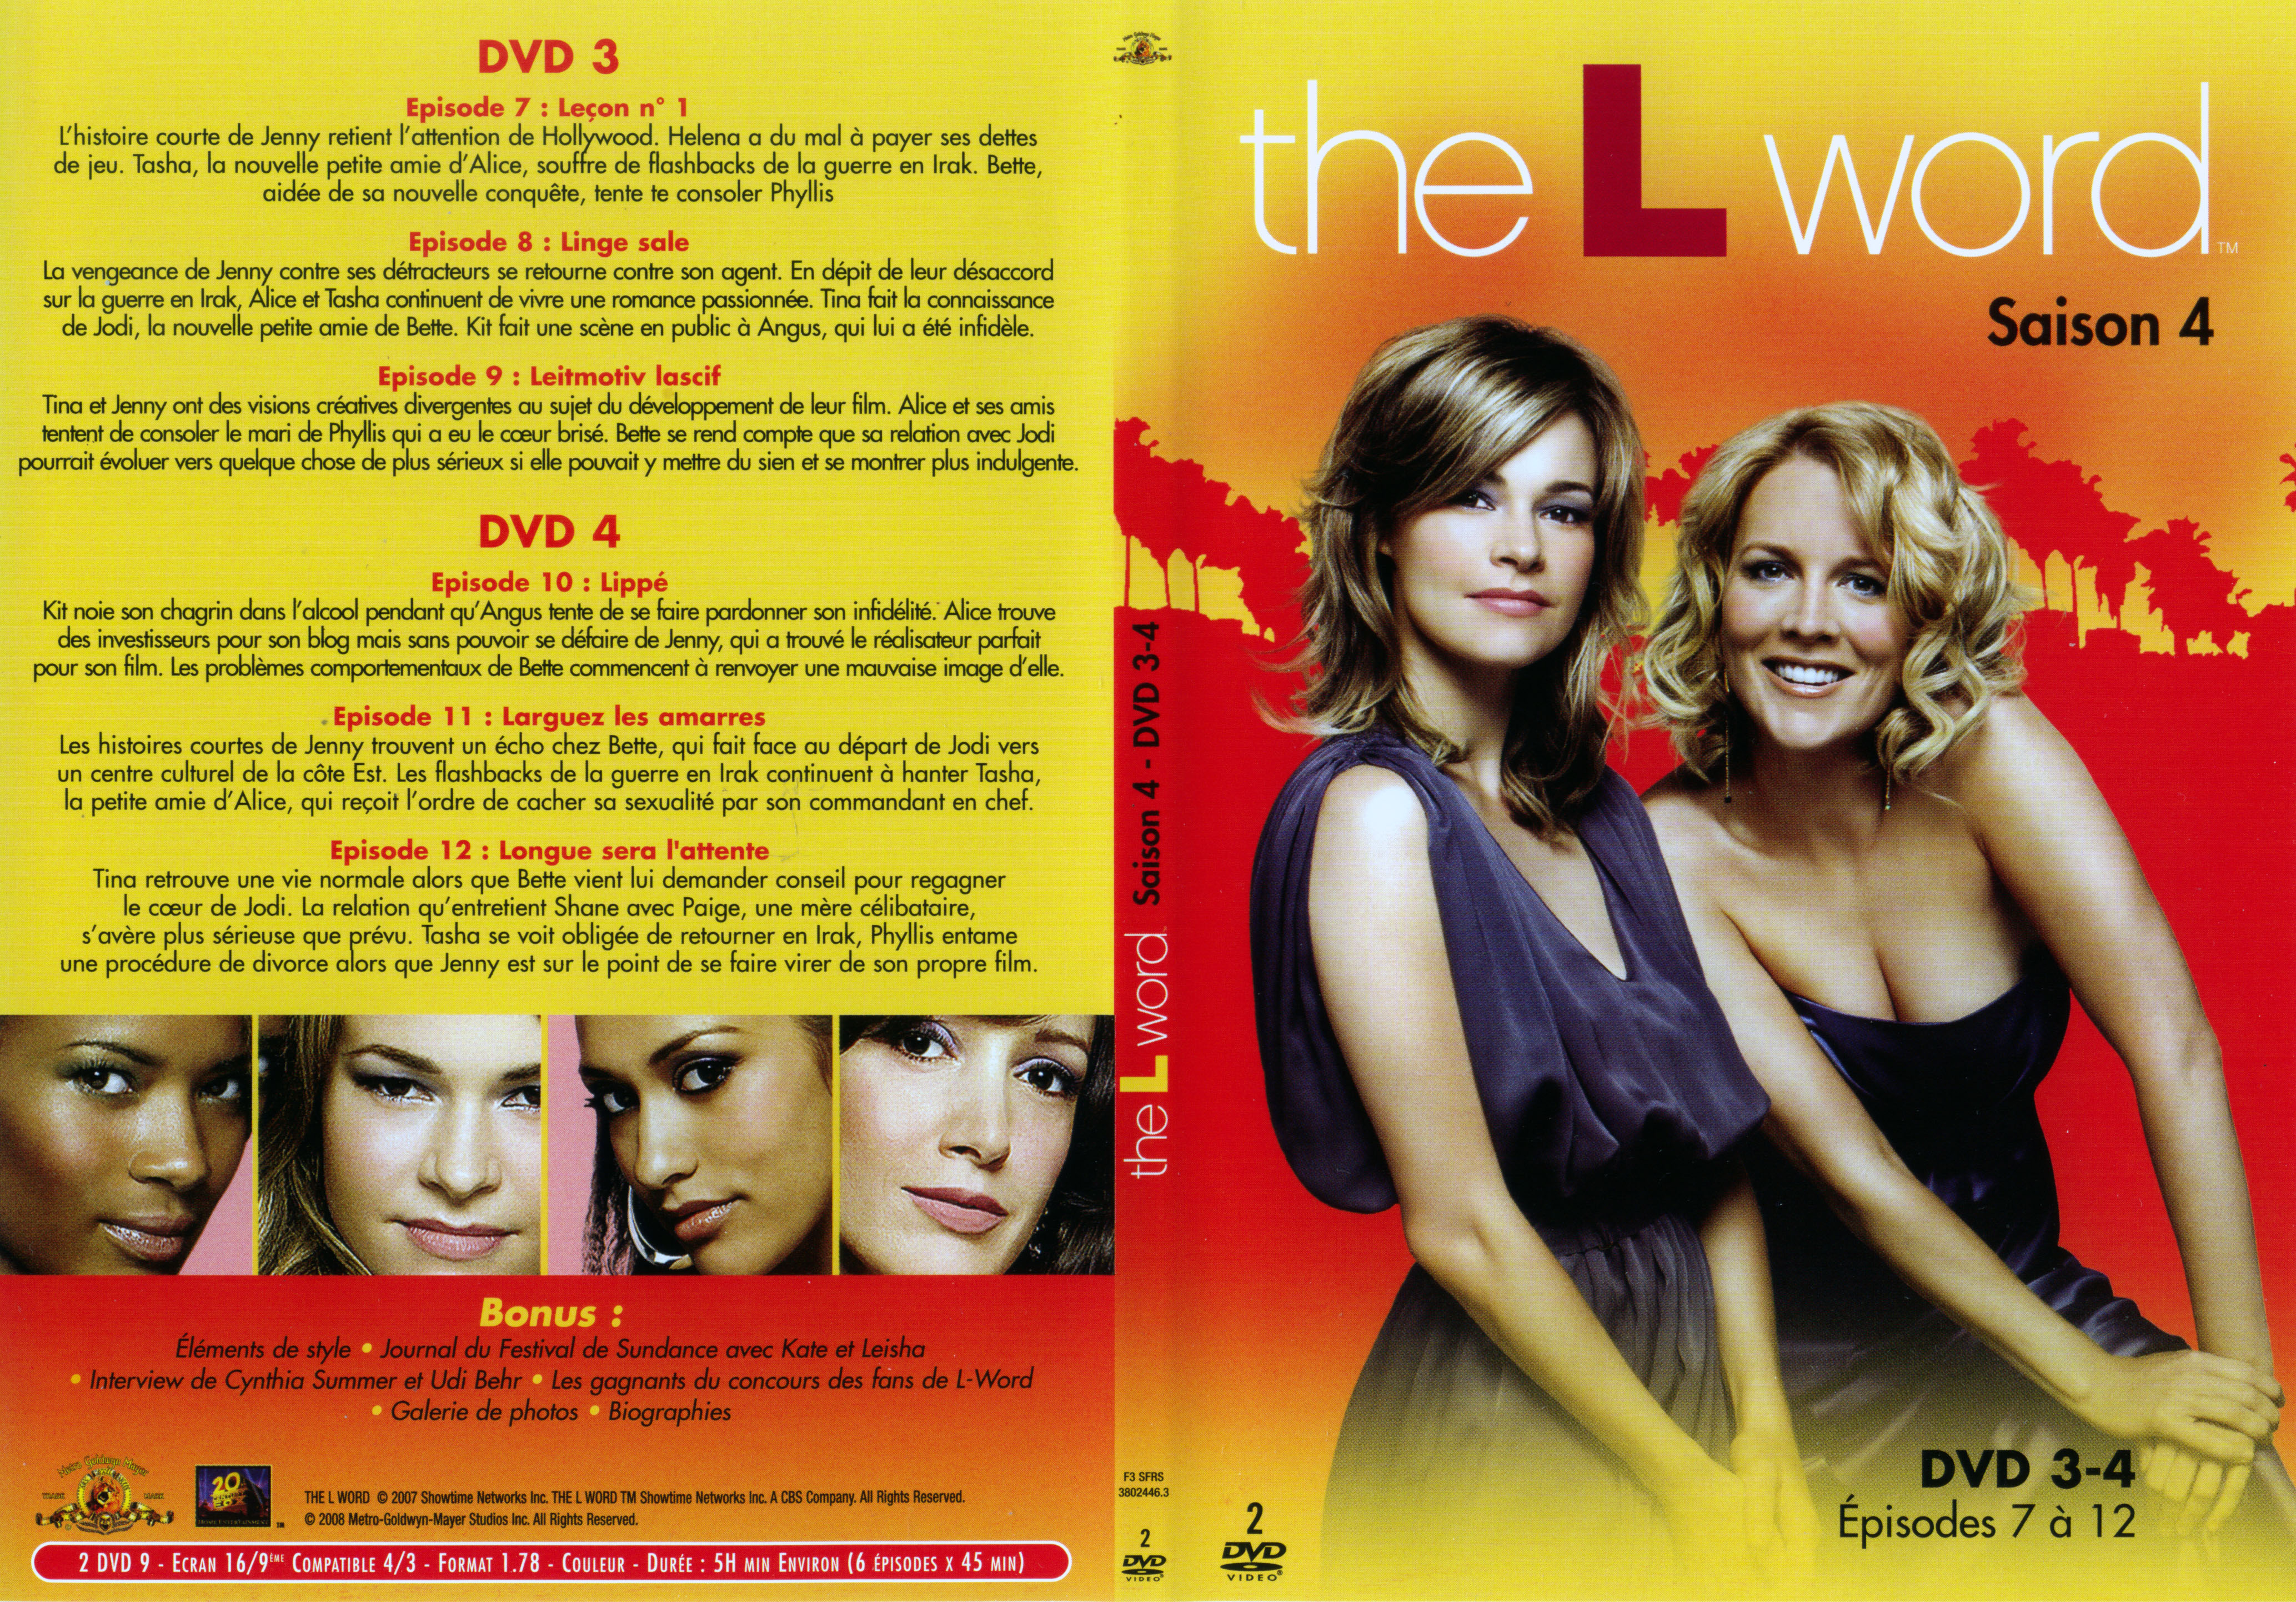 Jaquette DVD The L word saison 4 DVD 3-4